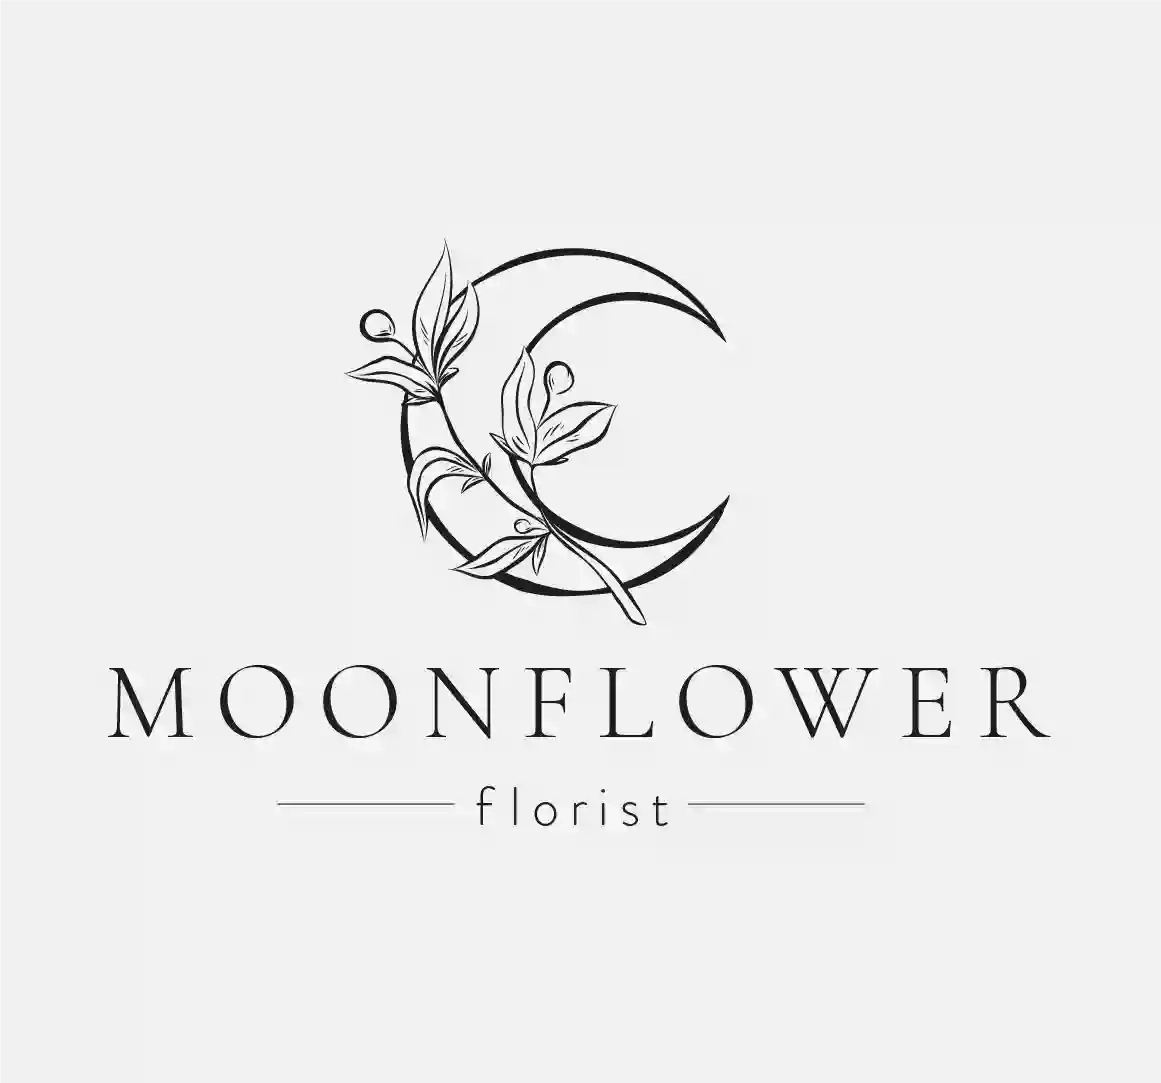 Moonflower florist